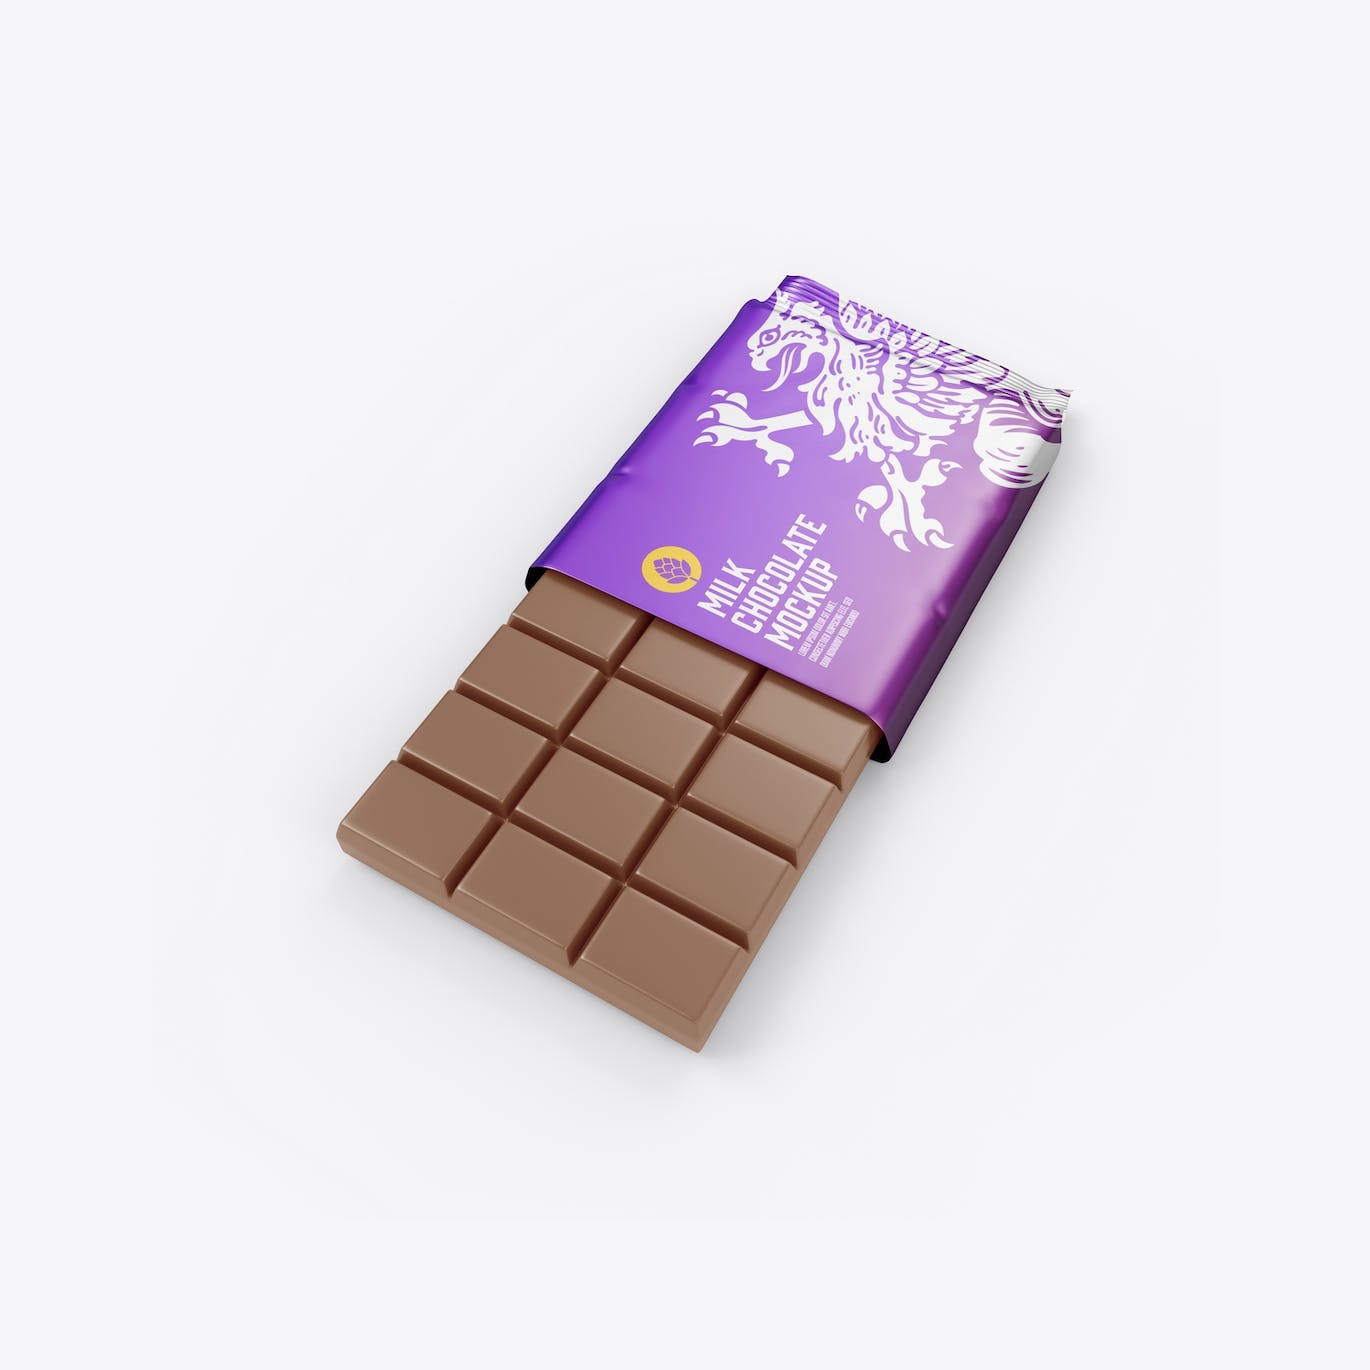 光亮的巧克力棒设计包装样机图 Set Glossy Chocolate Bar Mockup 样机素材 第8张